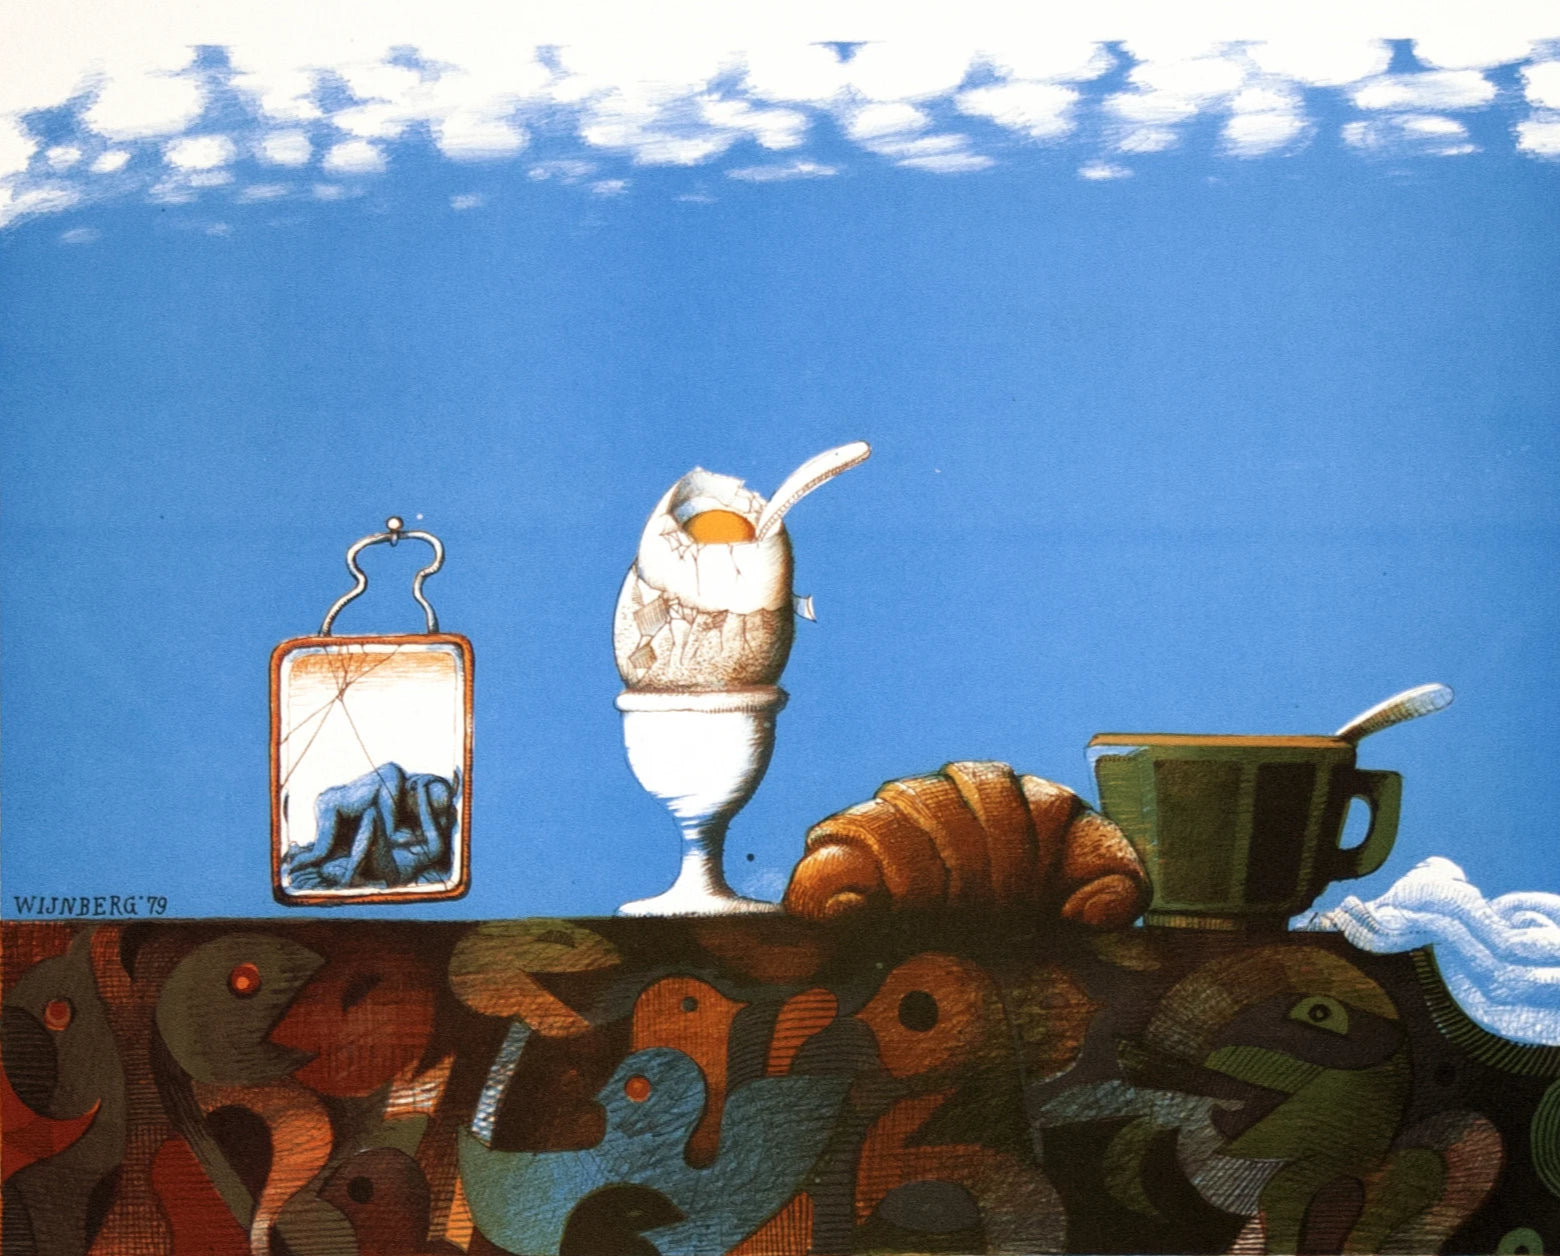 Nicolaas Wijnber, Een ontbijtje voor Max Ernst (1979)